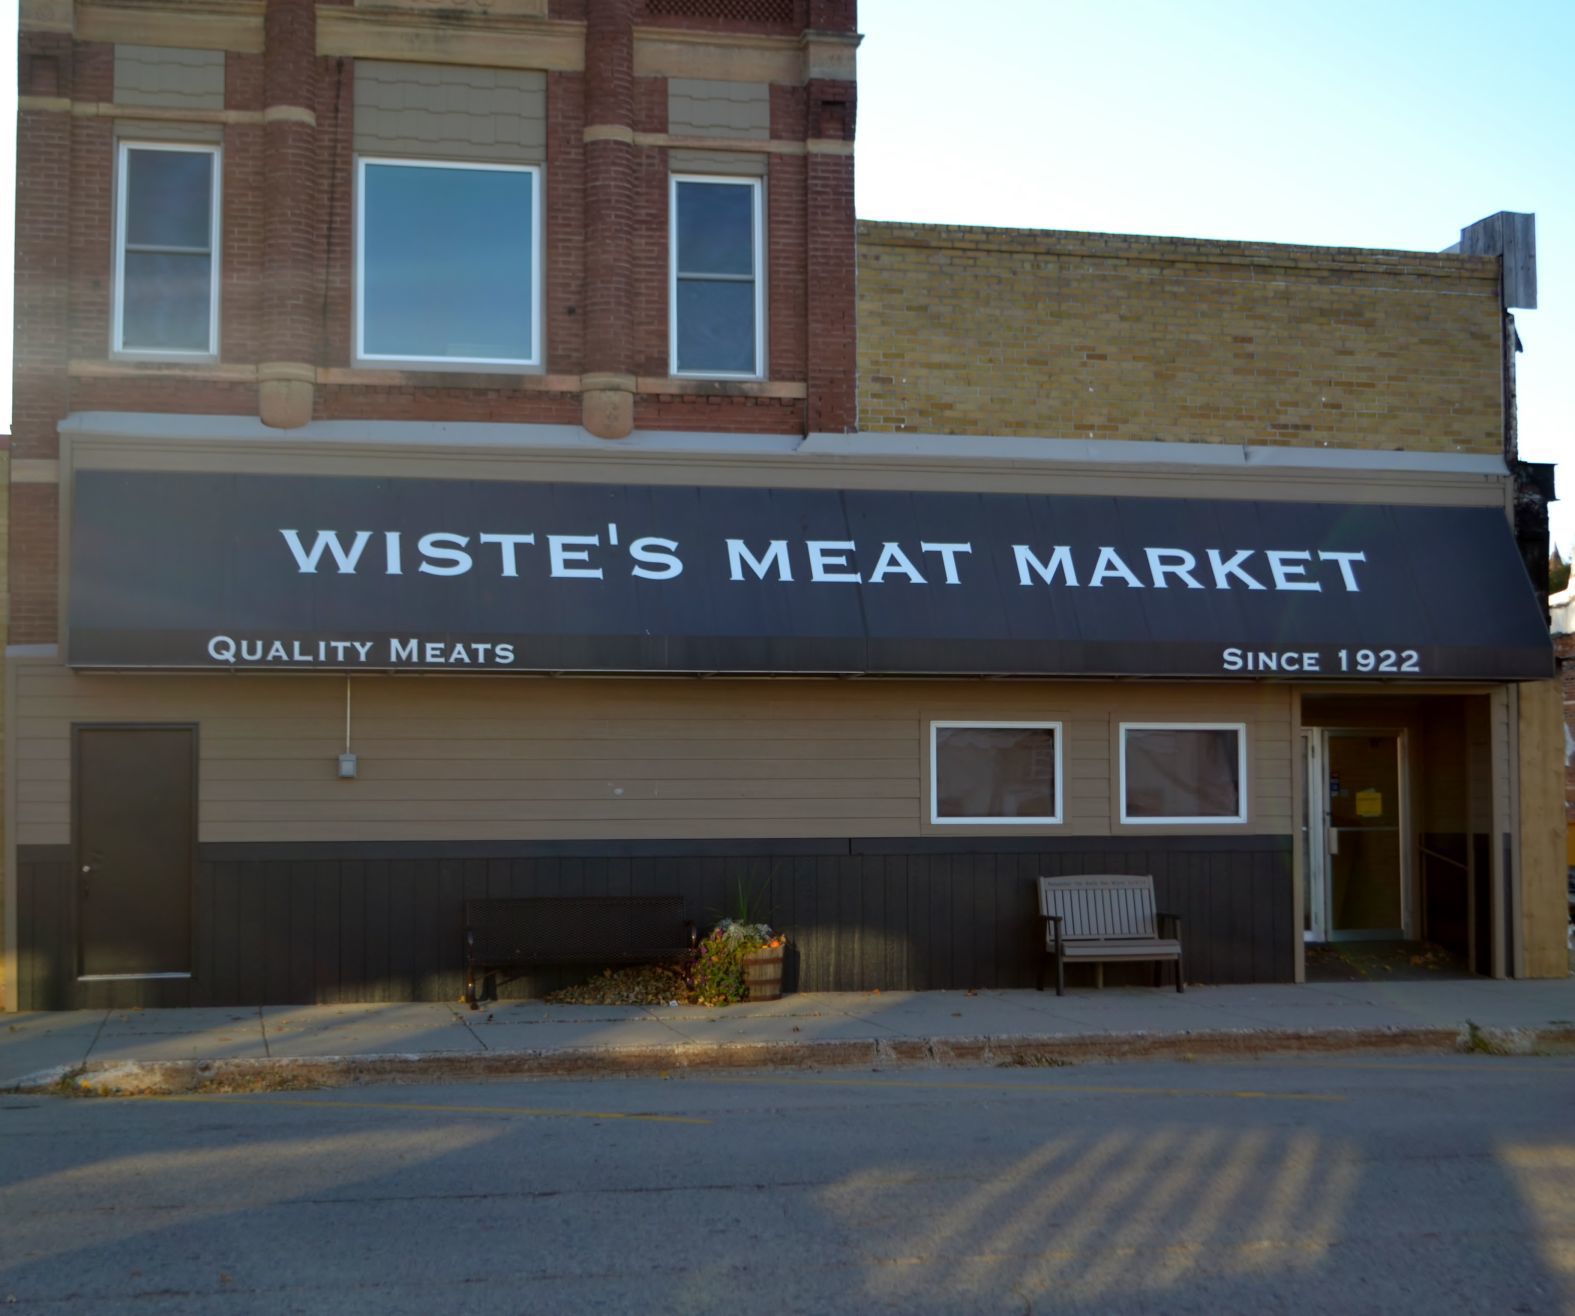 meat market near hard rock casino